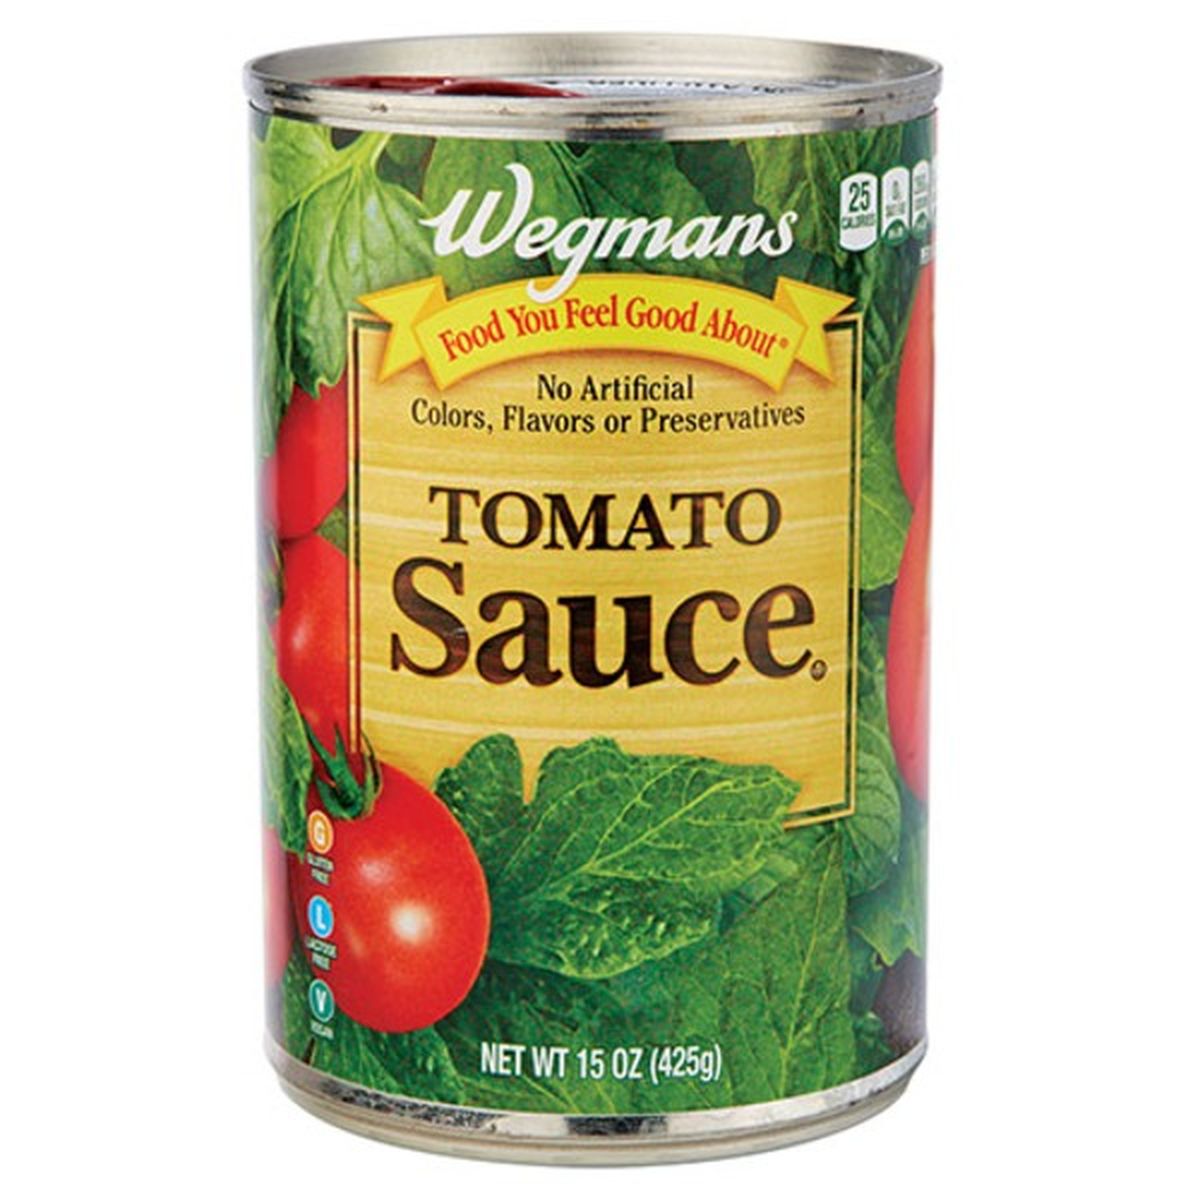 Calories in Wegmans Tomato Sauce